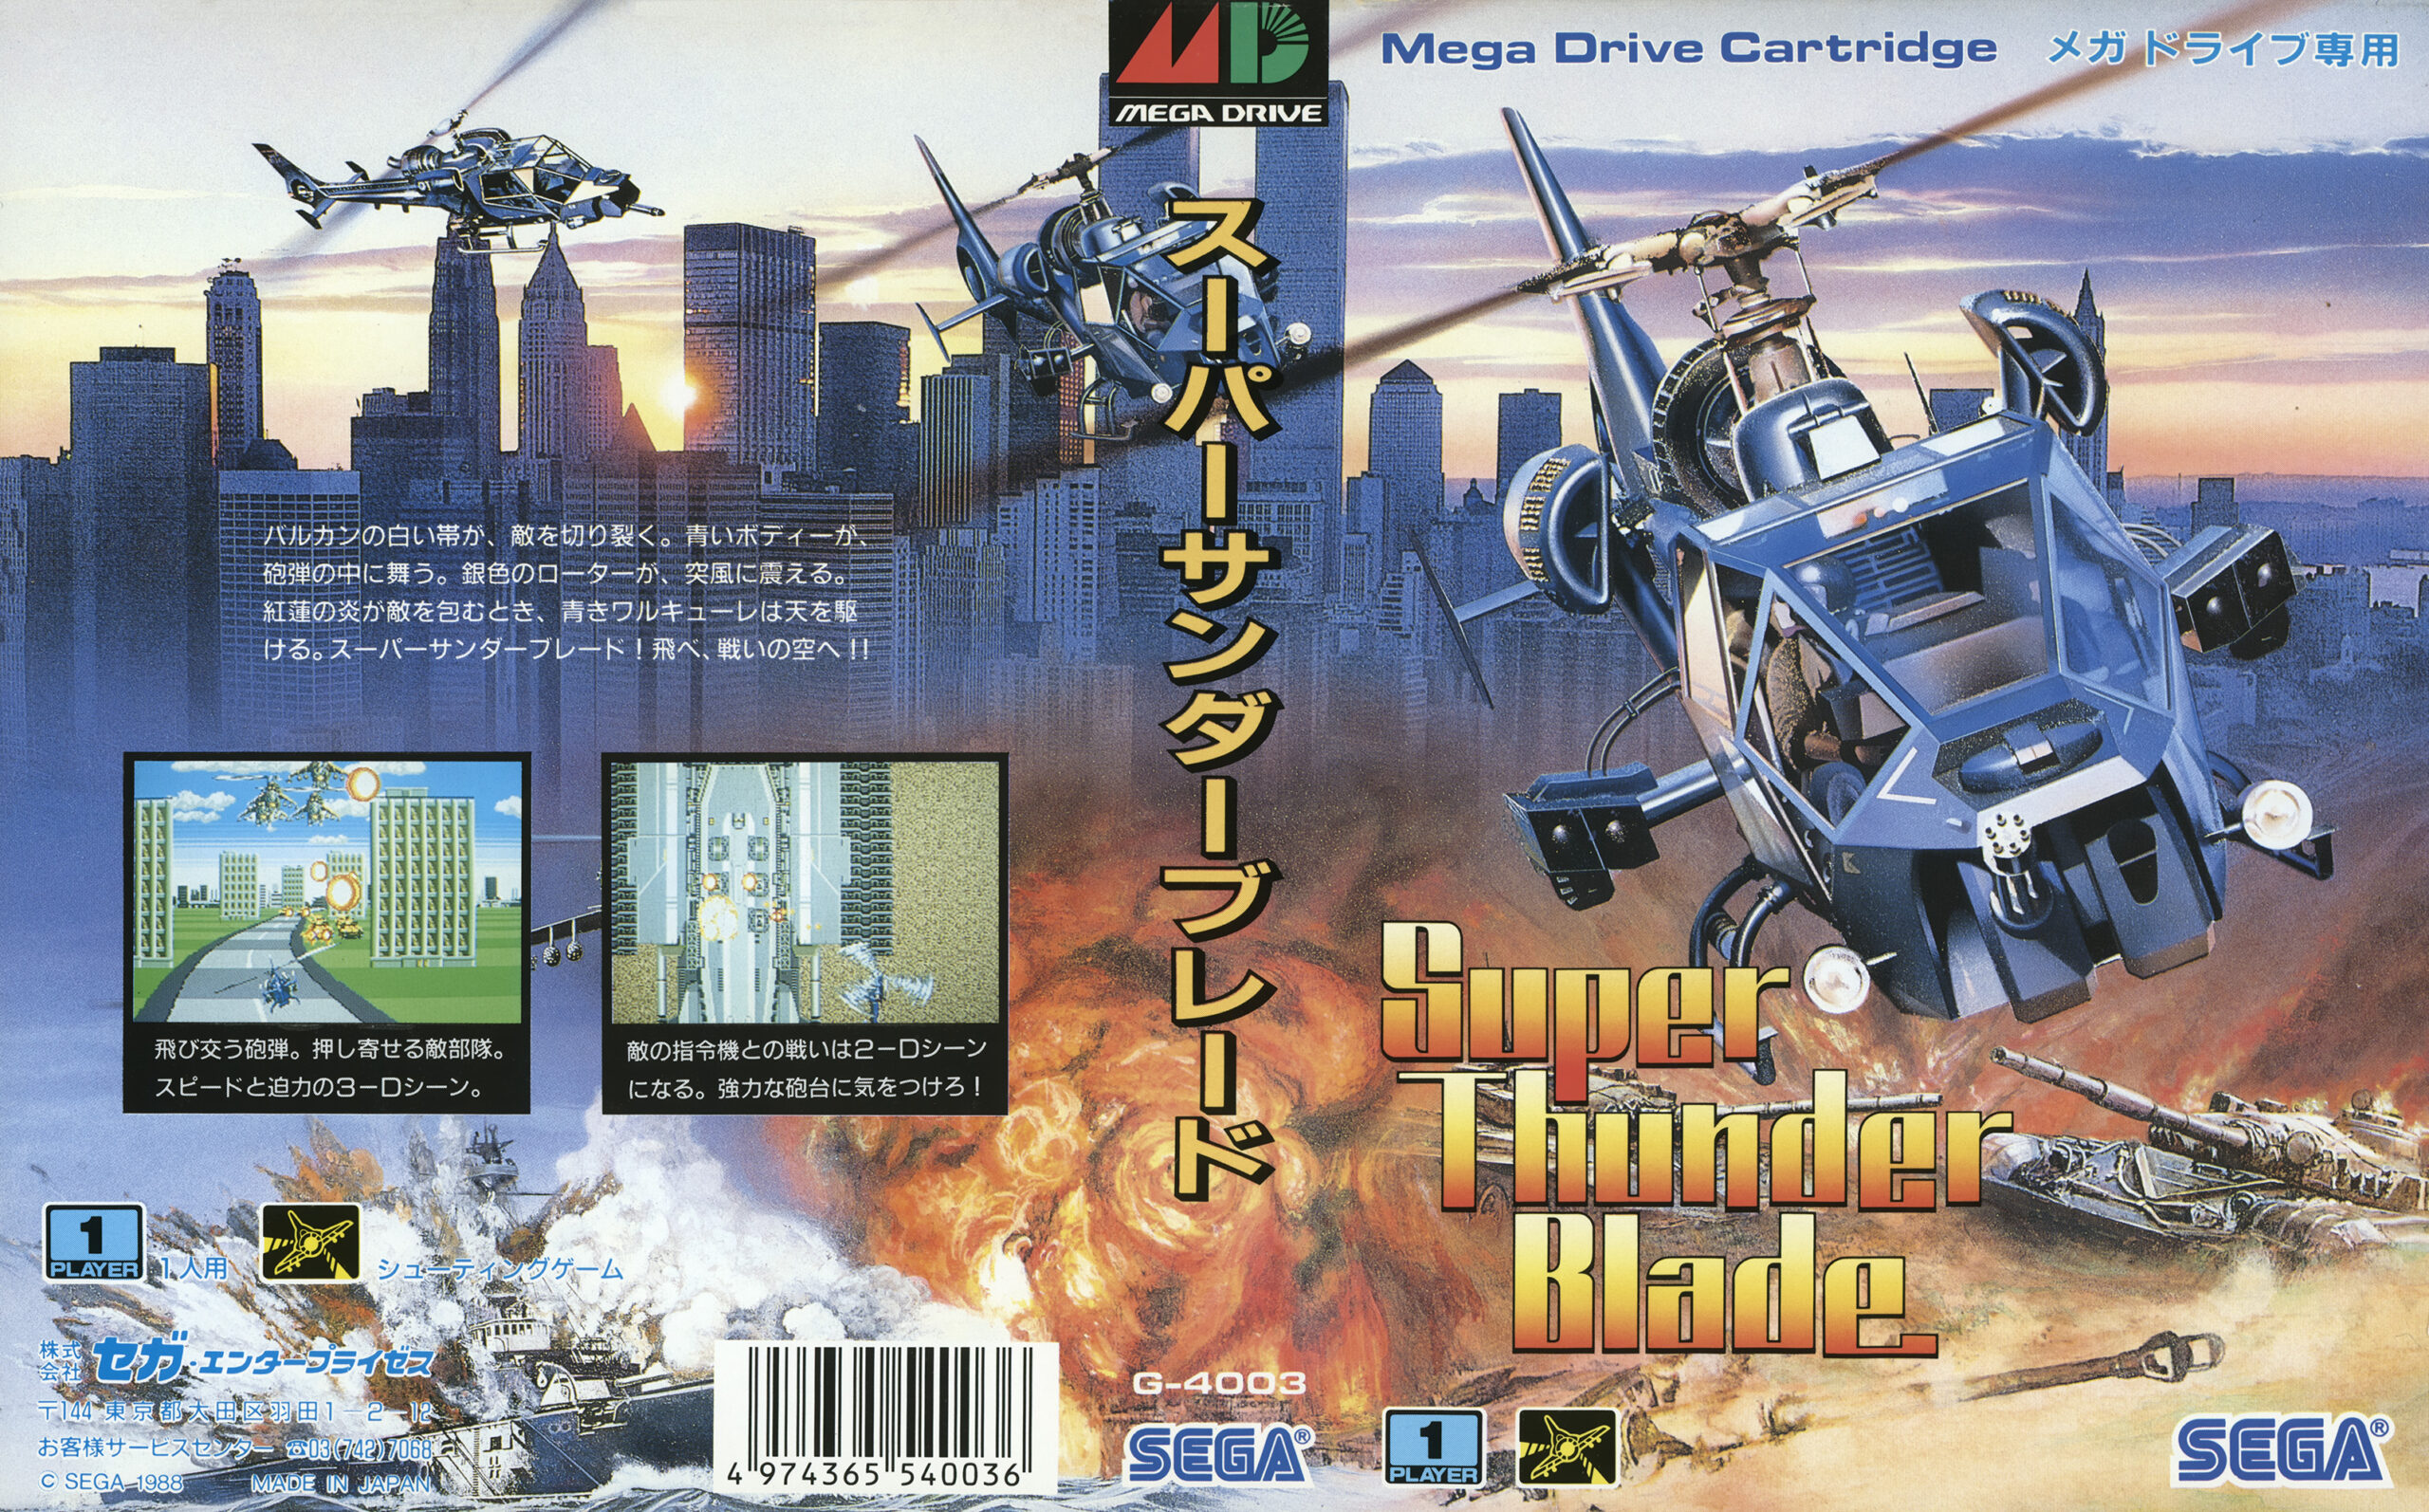 Thunder Blade / Super Thunder Blade (MS, GEN - 1988) - Sega Does